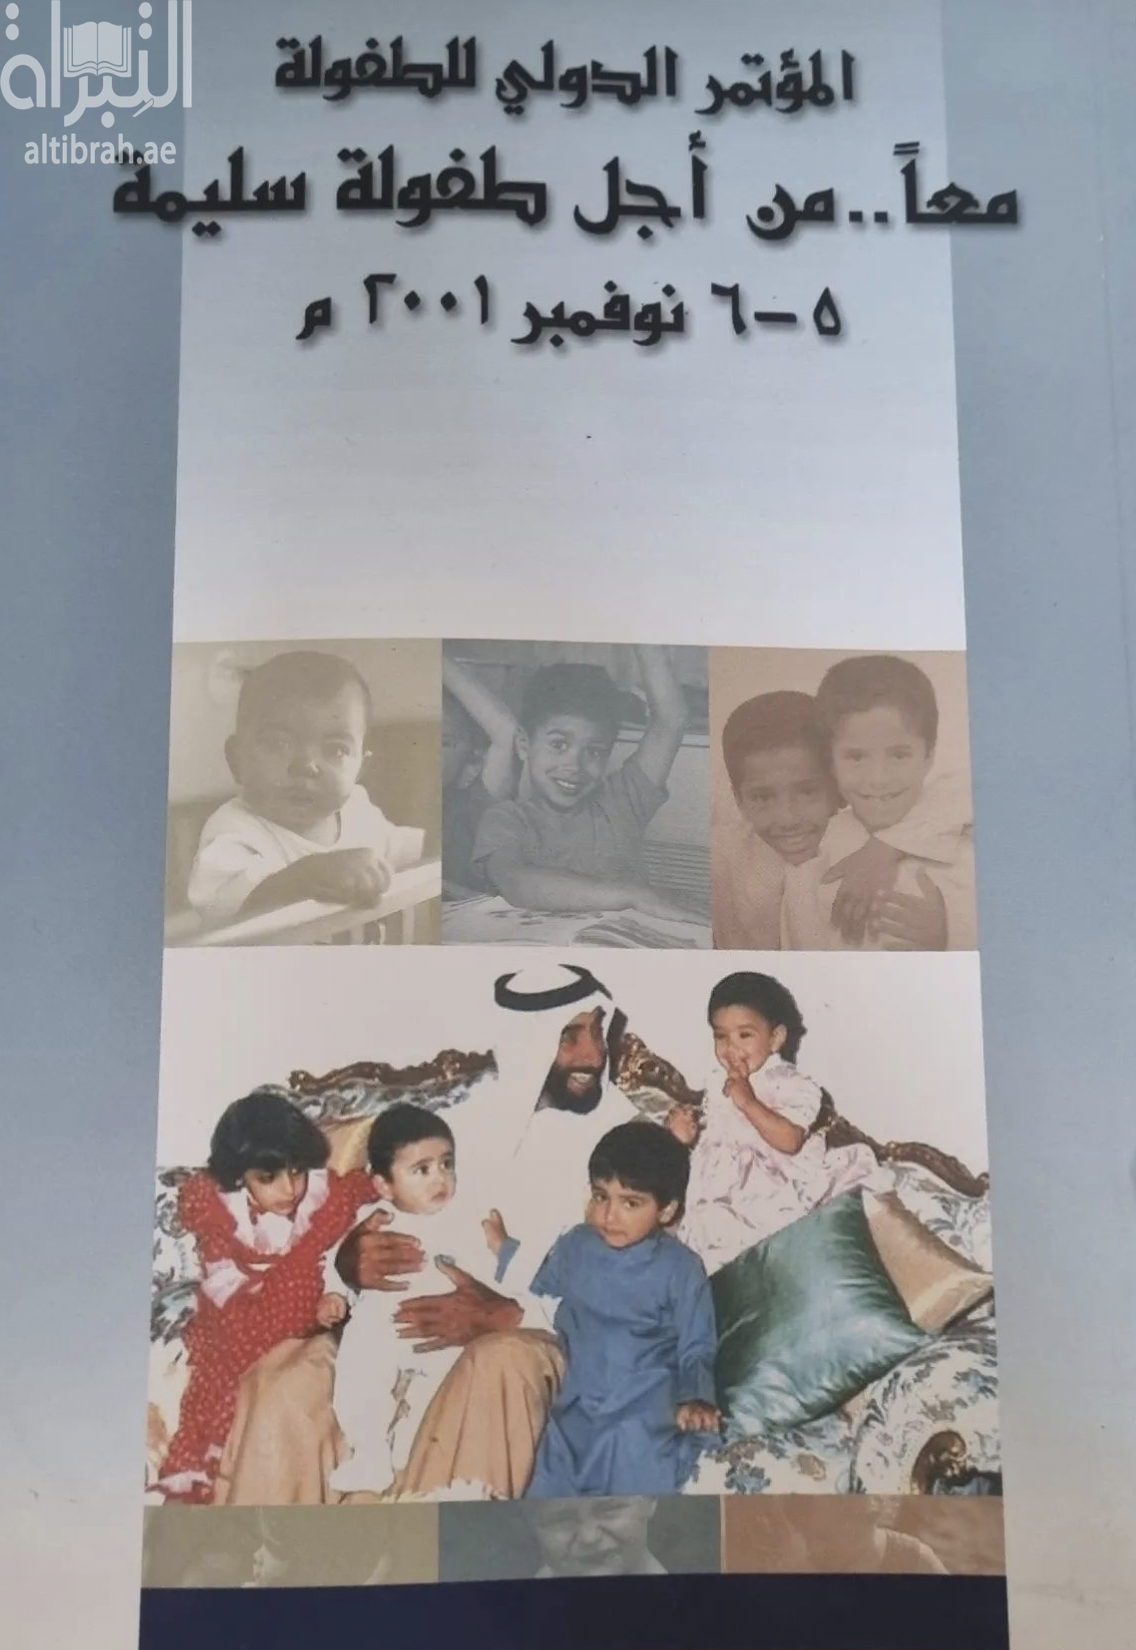 معا من أجل طفولة سليمة : أوراق المؤتمر الدولي للطفولة 6-5 نوفمبر  2001